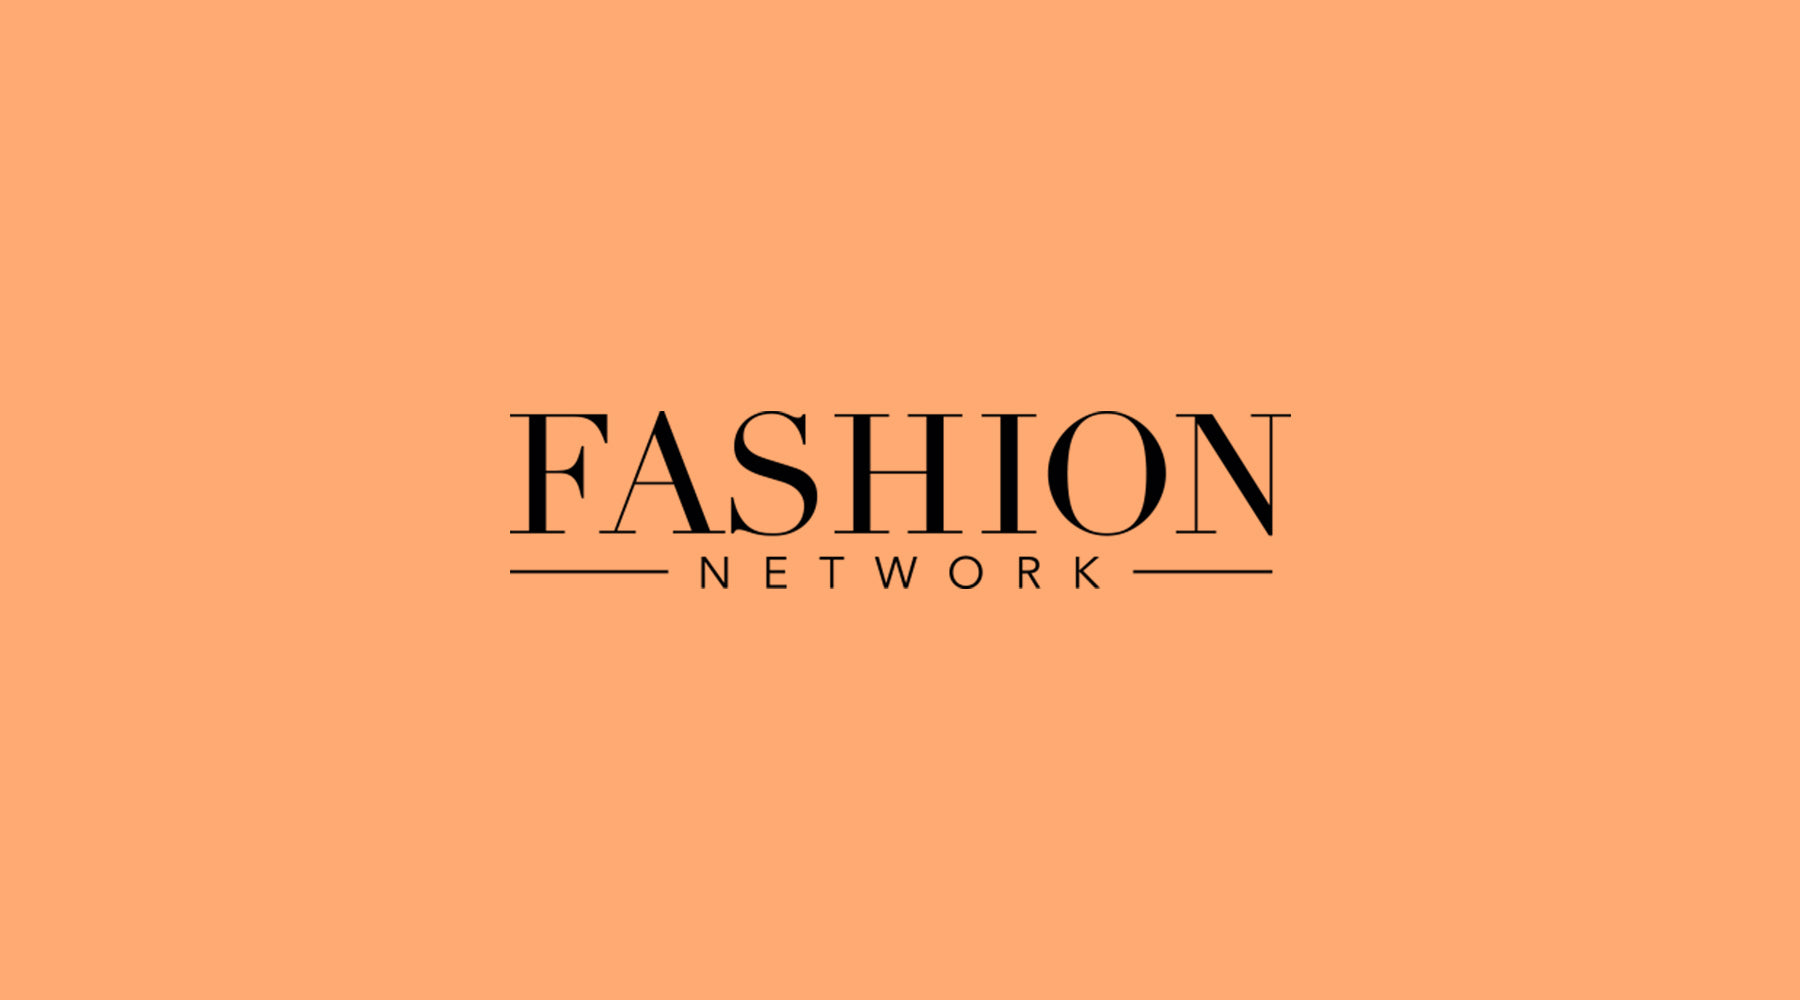 Fashion network - Lumadea, nuovo brand cosmetico a base di siero di lumaca, ha lanciato solari e make up